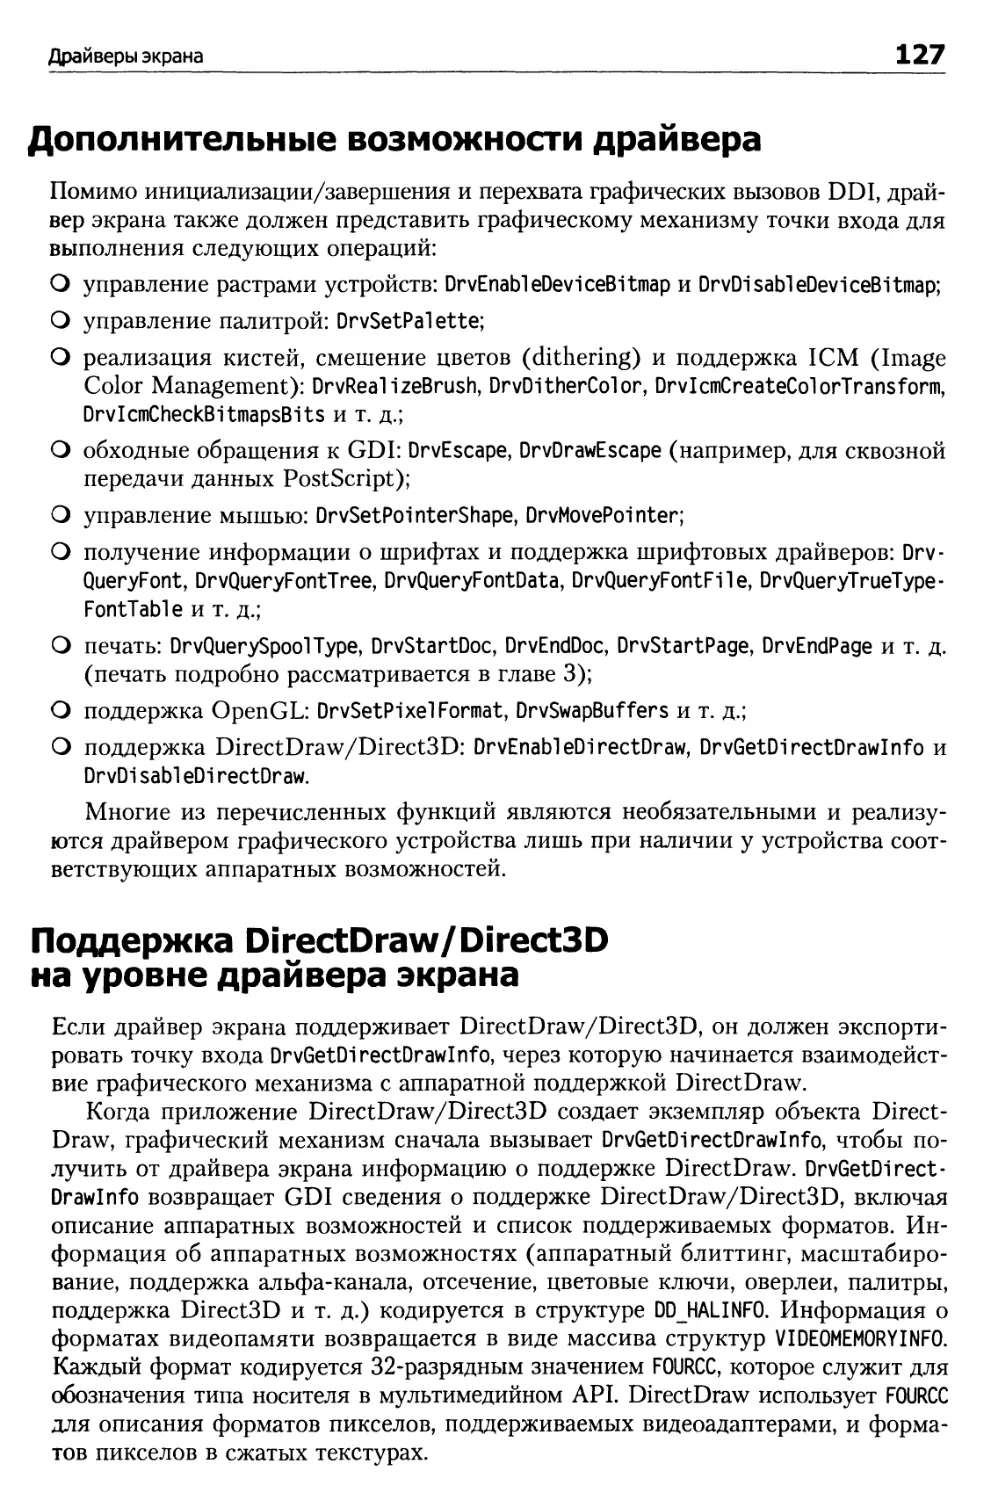 Дополнительные возможности драйвера
Поддержка DirectDraw/Direct3D на уровне драйвера экрана